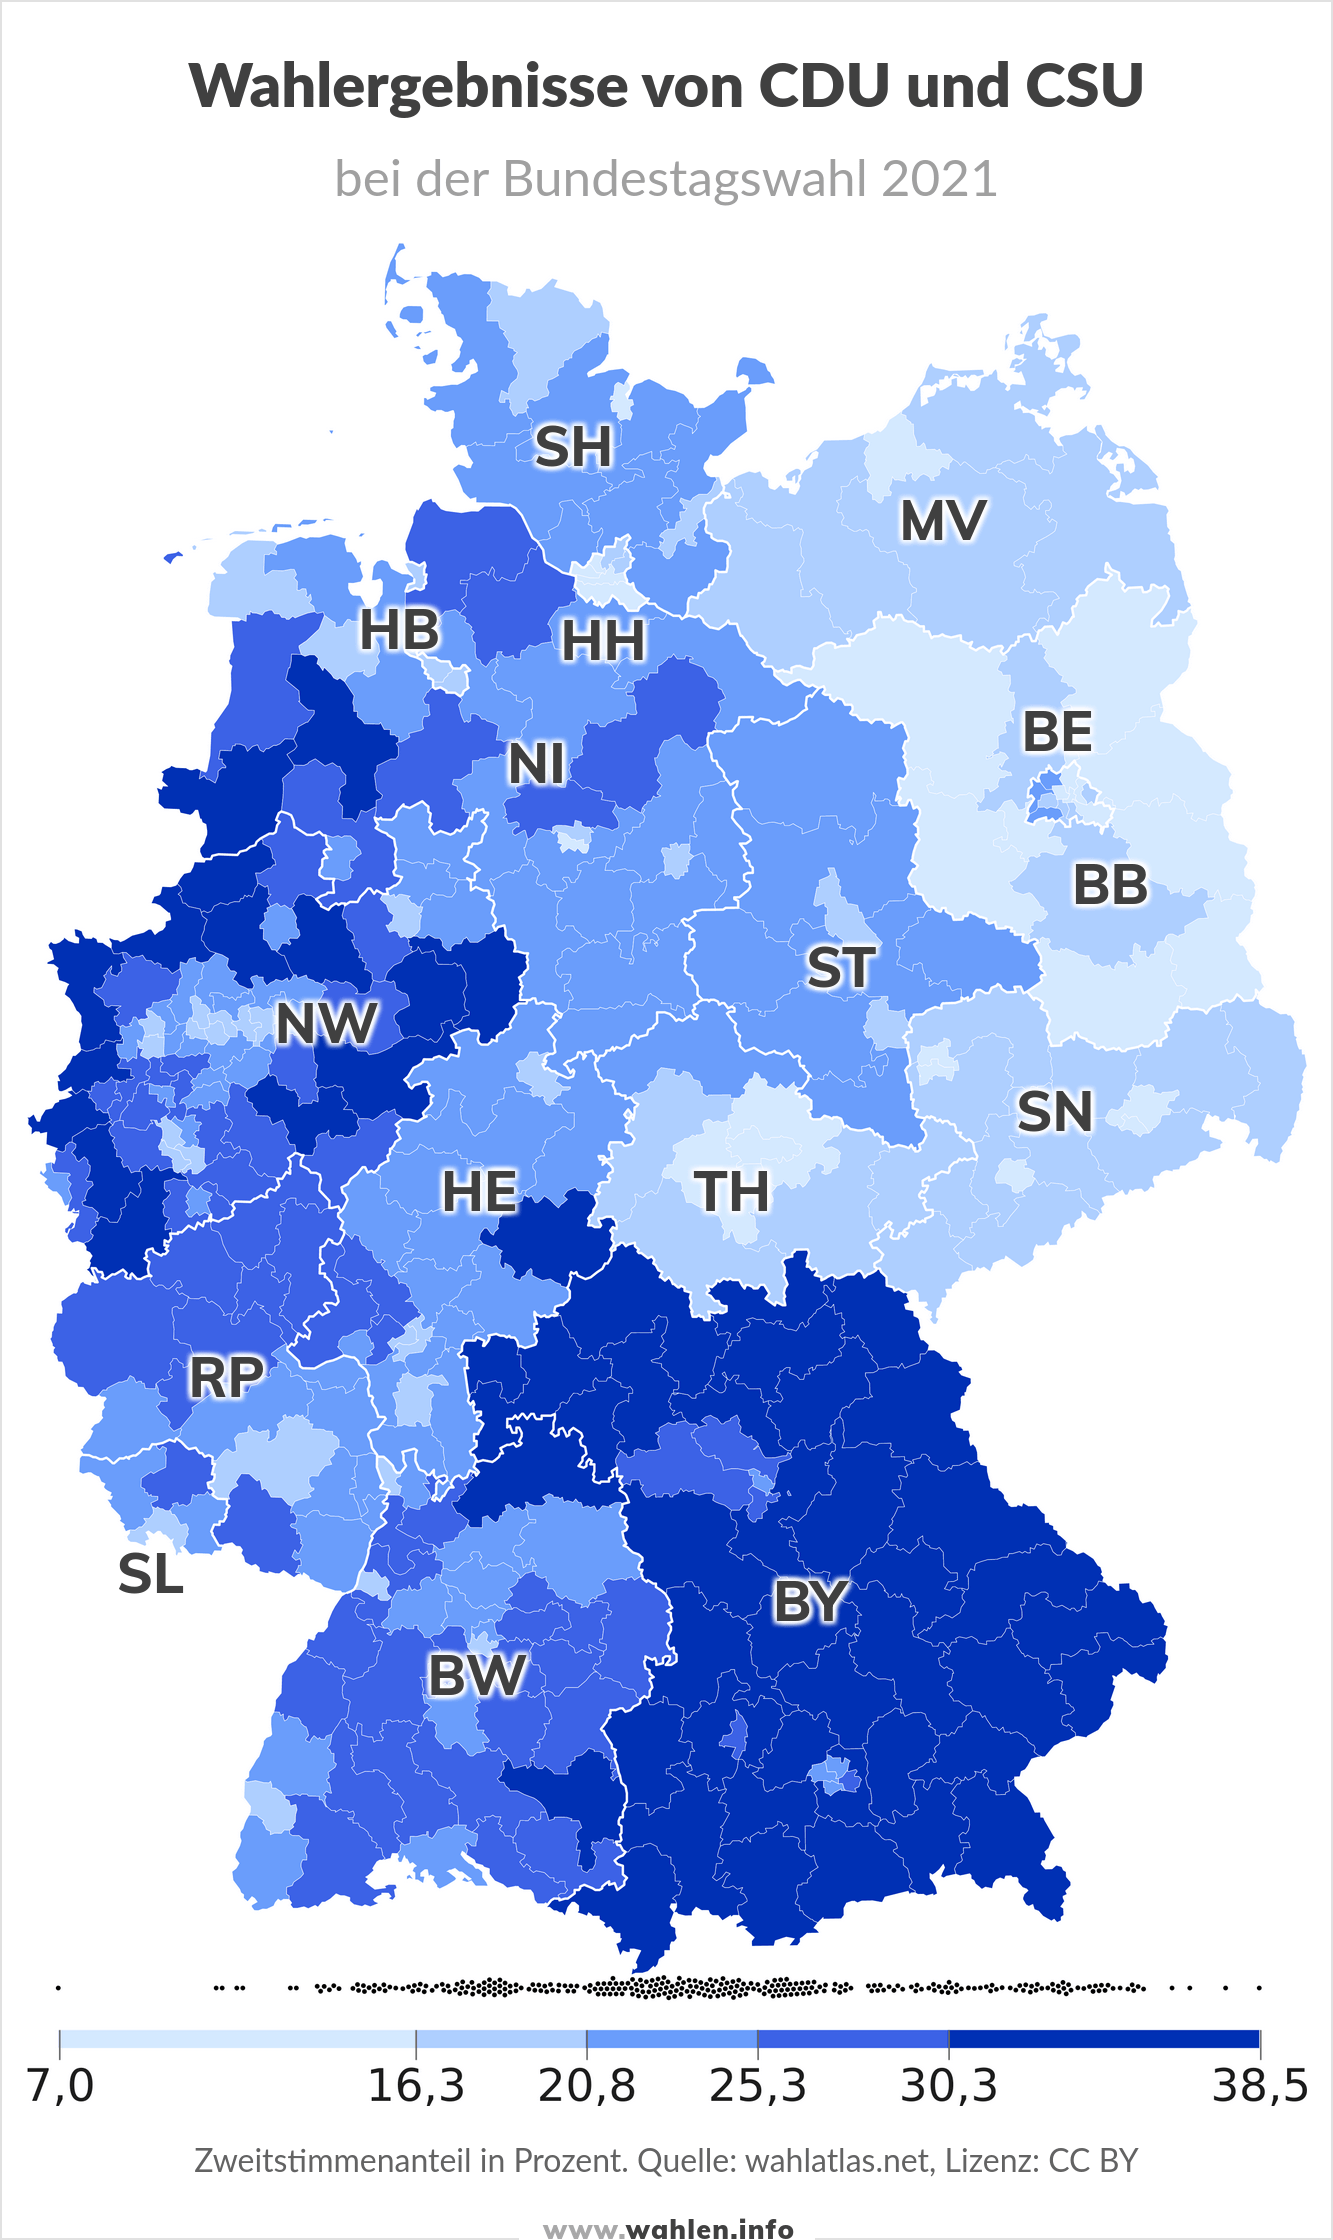 Bundestagswahl 2025 - Ergebnisse der CDU und CSU (Union) bei der Bundestagswahl 2021 (Karte)